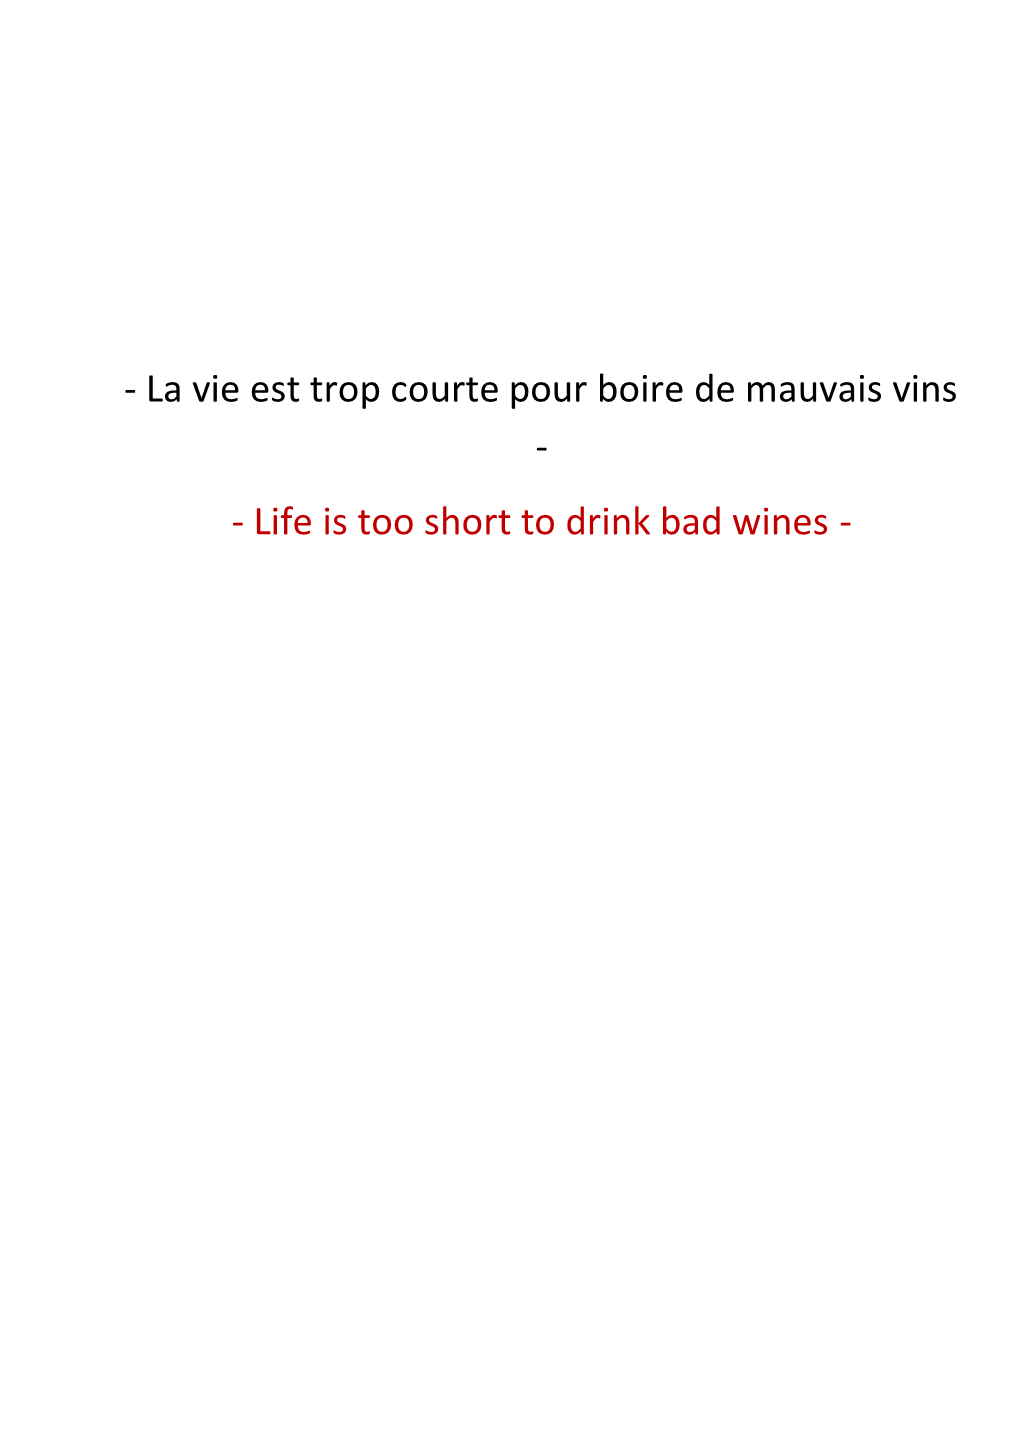 La Vie Est Trop Courte Pour Boire De Mauvais Vins - - Life Is Too Short to Drink Bad Wines